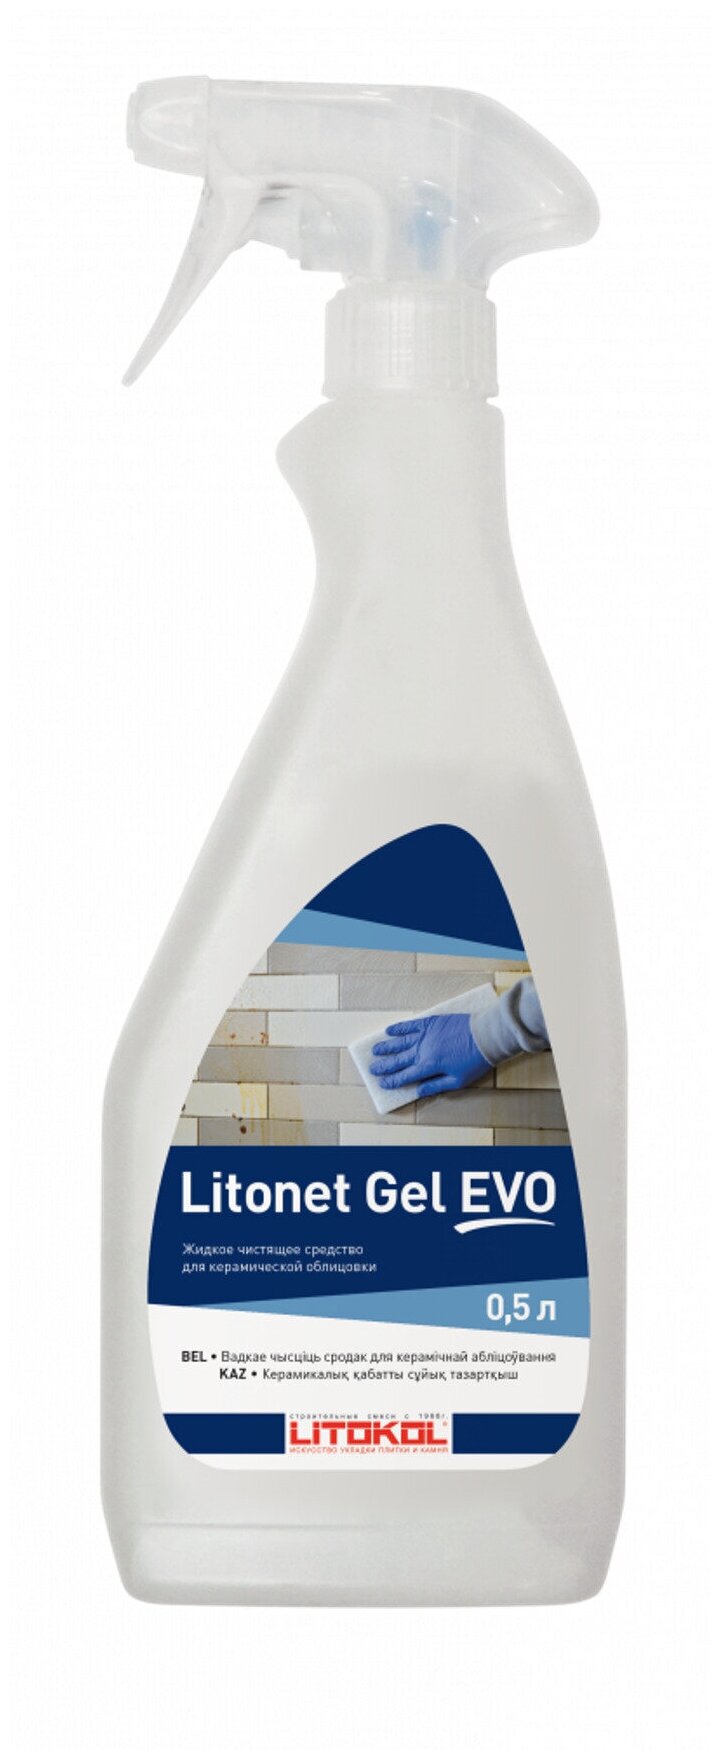 Очиститель эпоксидной затирки Litokol LITONET GEL EVO 0,5л 234600002